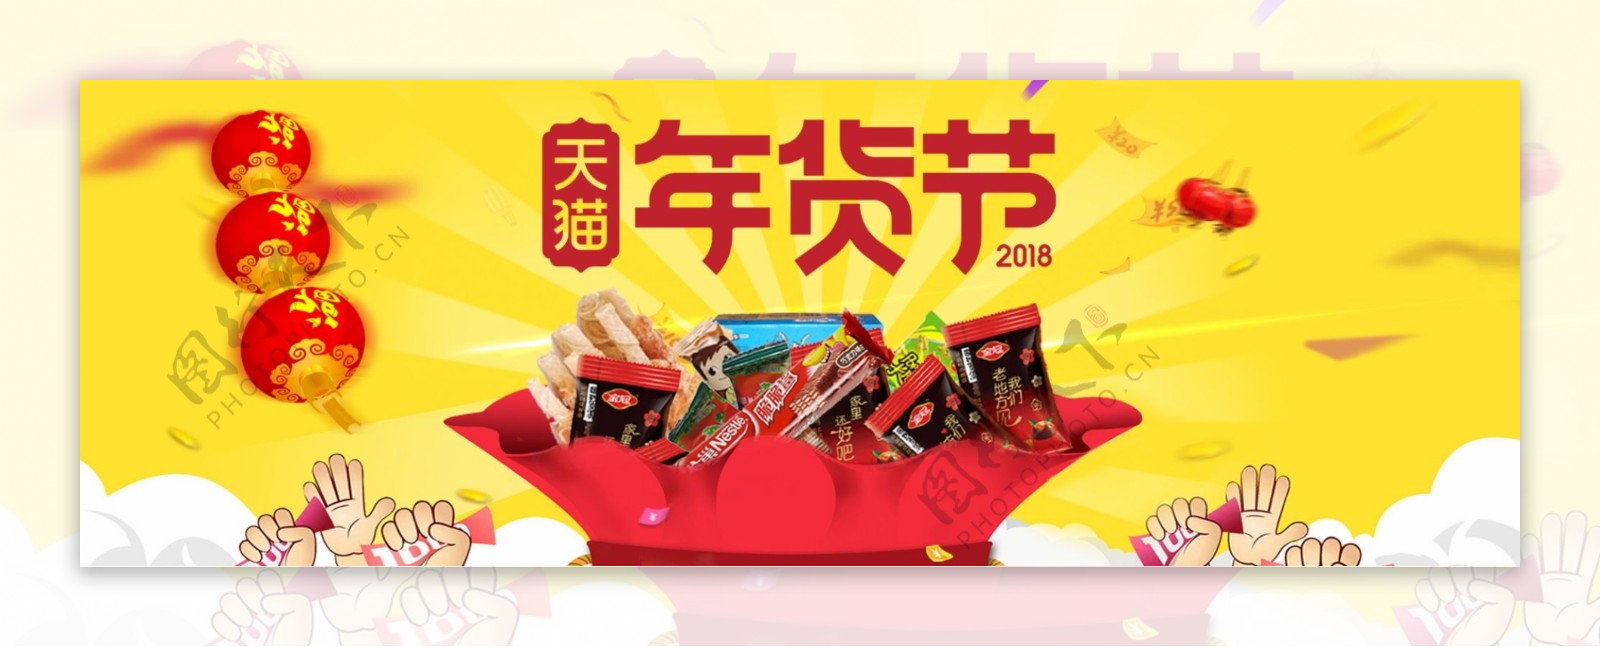 红黄色飘带新春天猫年货节淘宝电商海报